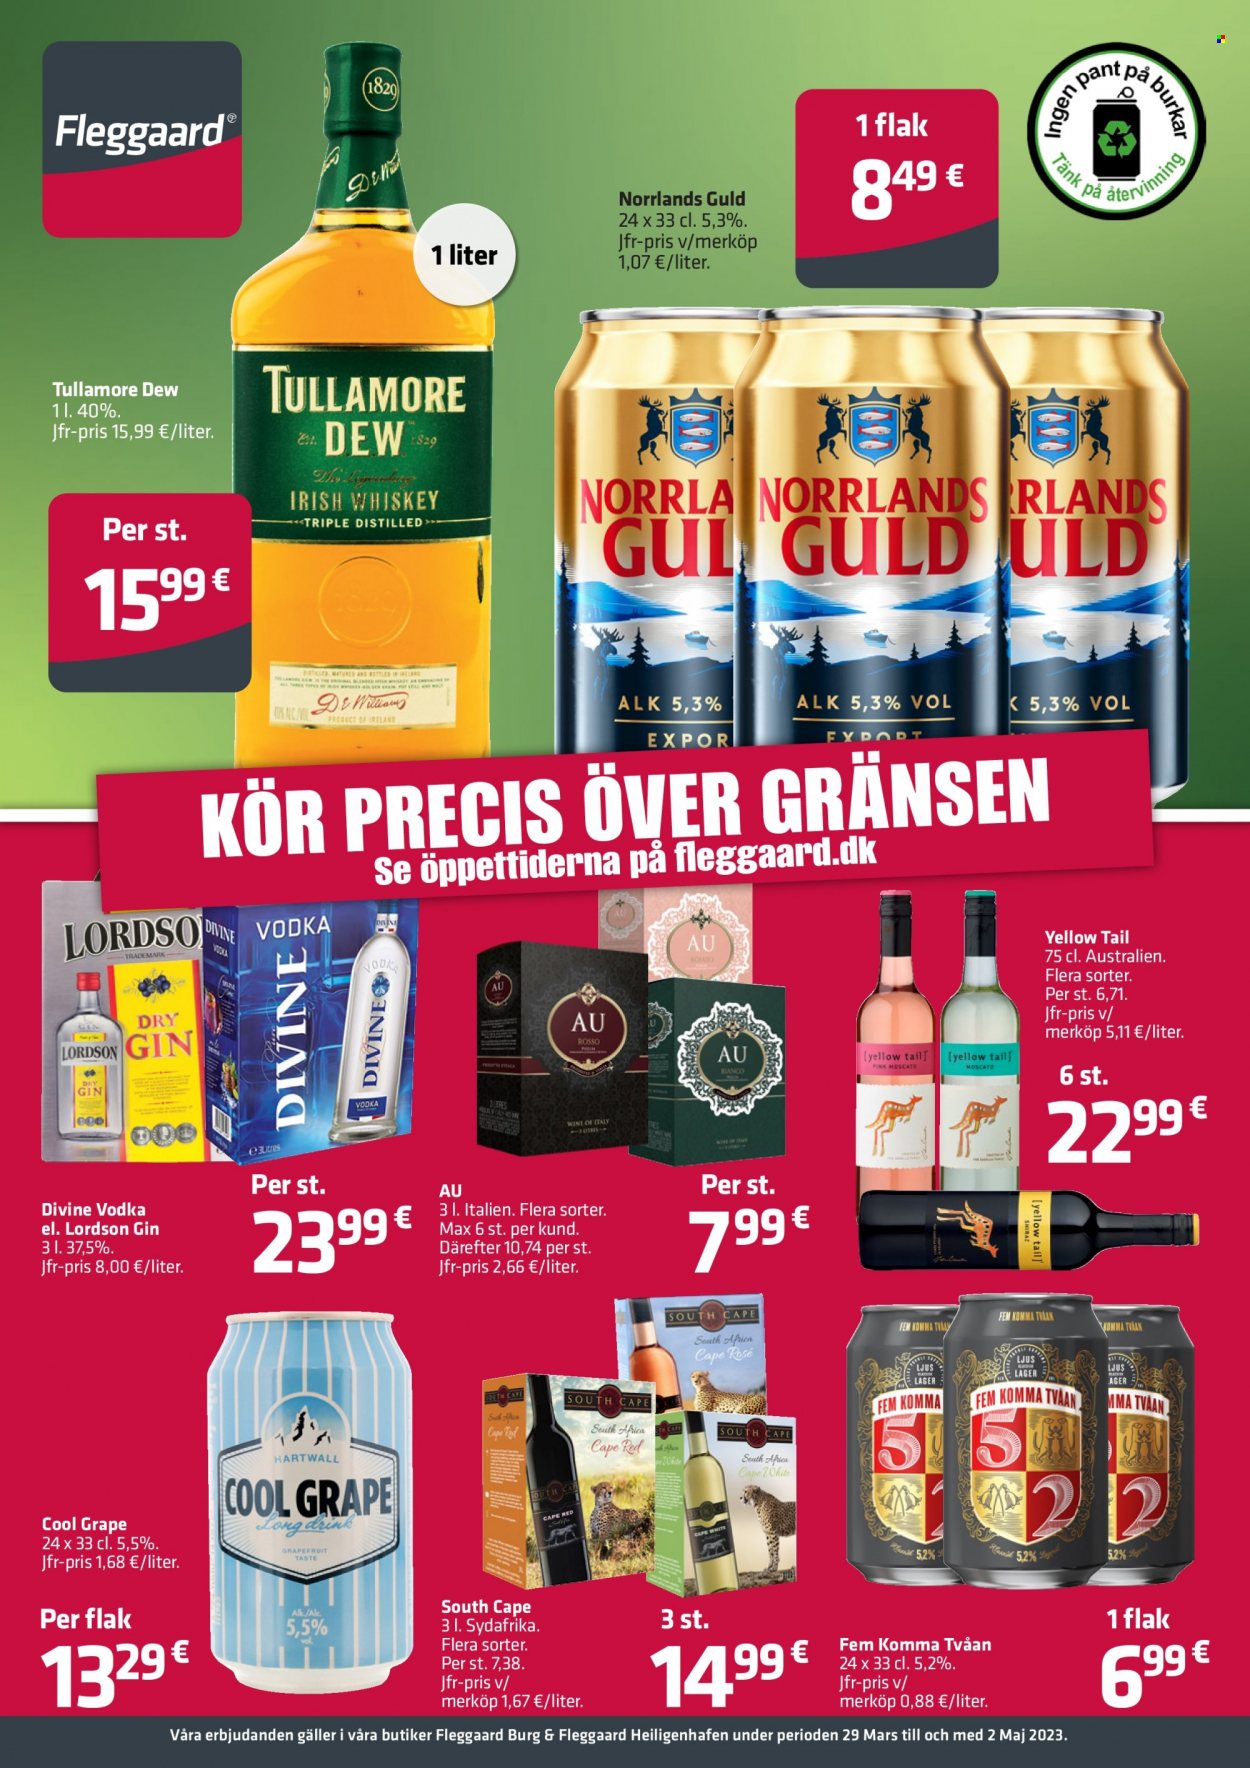 thumbnail - Fleggaard reklamblad - 29/3 2023 - 2/5 2023 - varor från reklamblad - Norrlands Guld, Cool Grape, Tullamore Dew, Vodka, gin, cape. Sida 1.